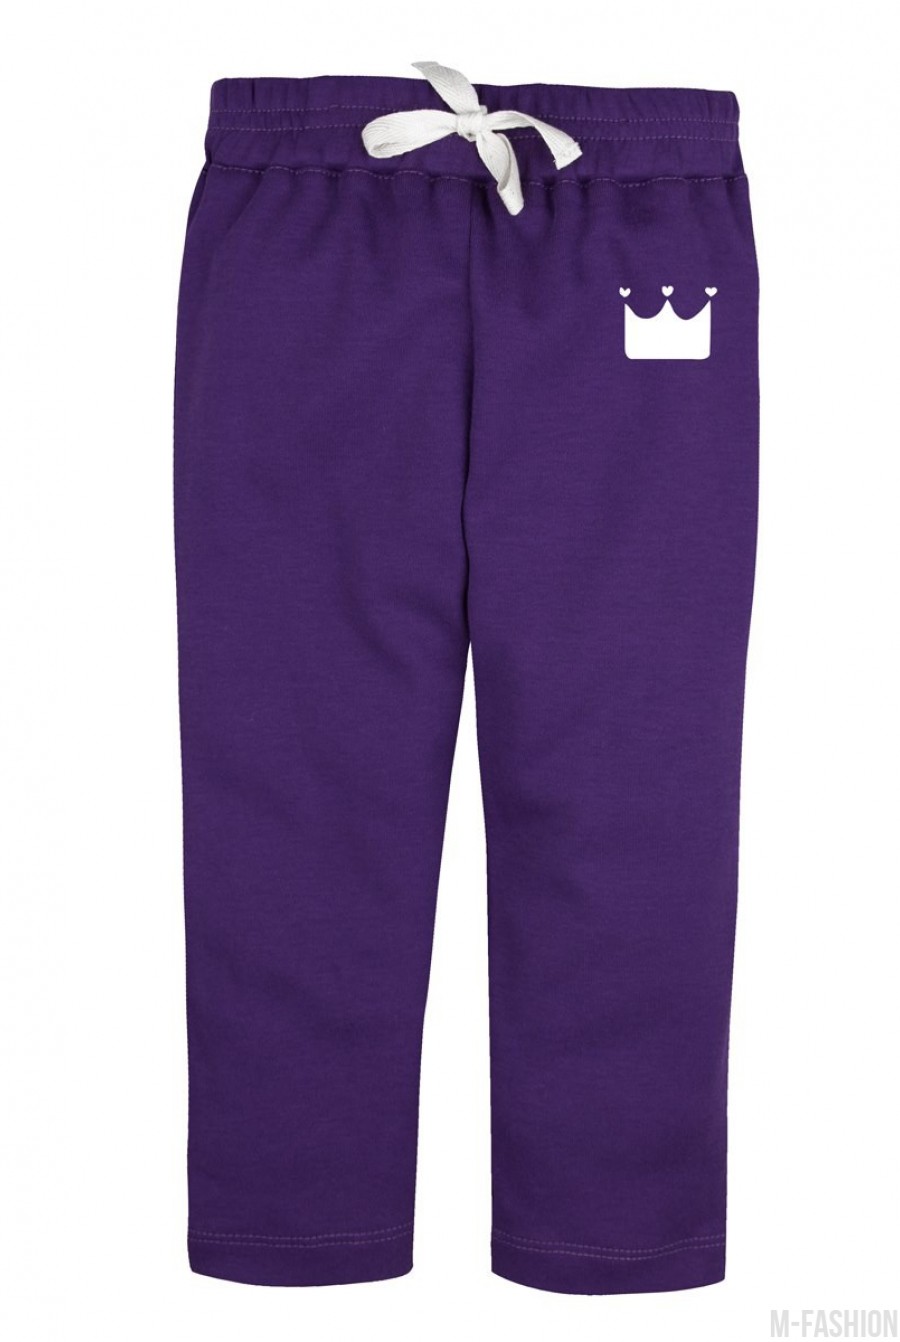 Трикотажные фиолетовые спортивные штаны на резинке- Фото 2